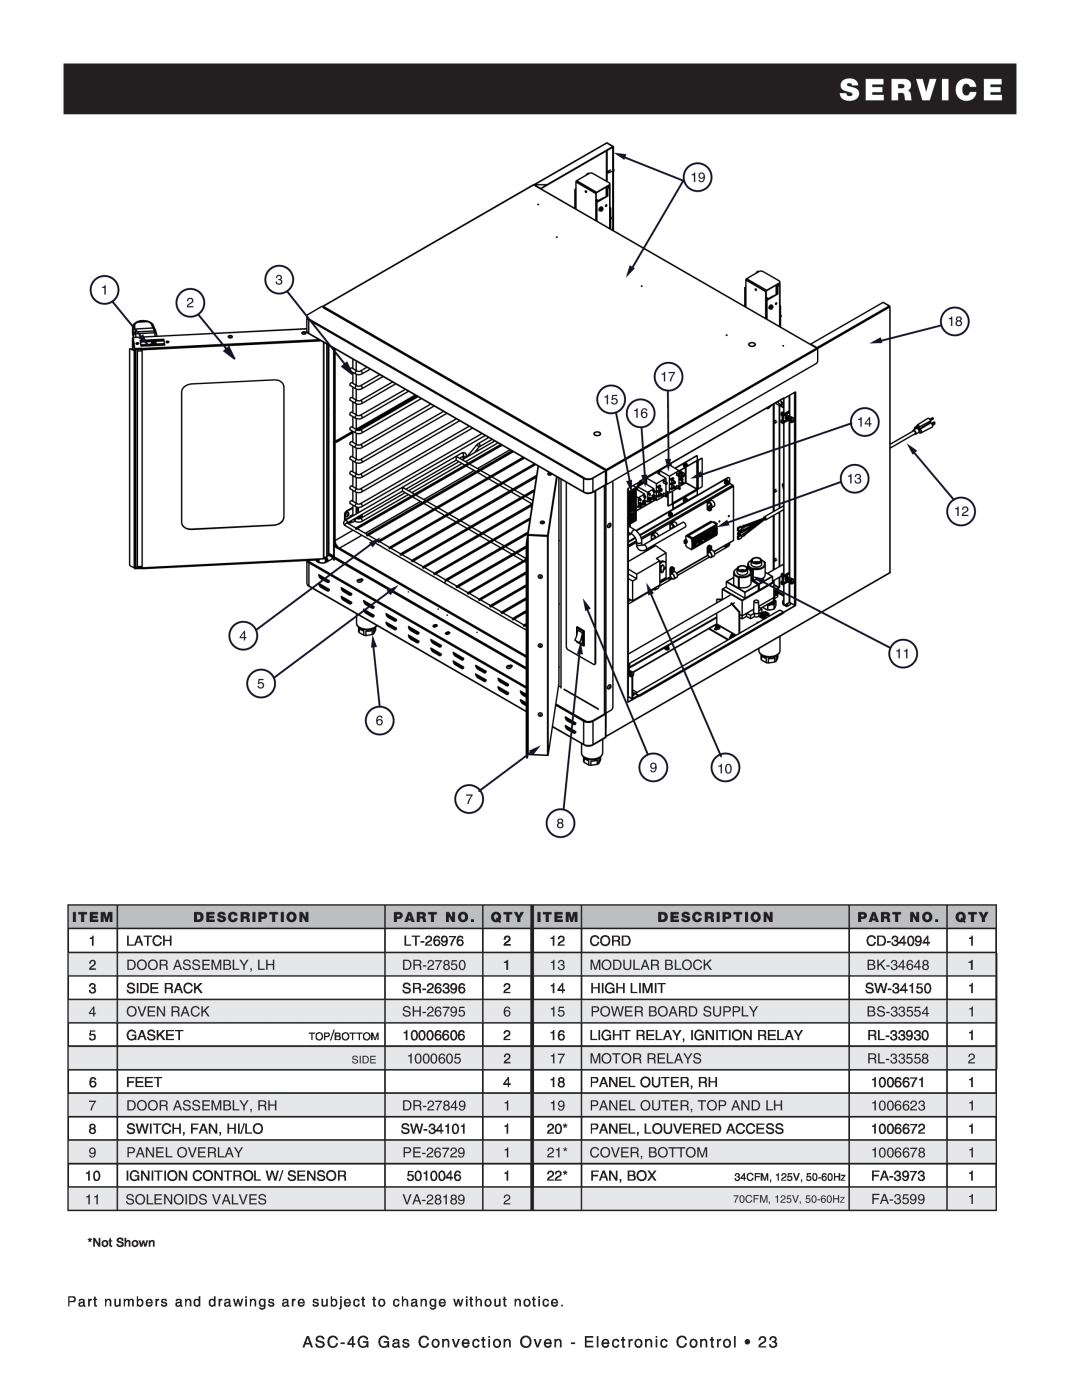 Alto-Shaam manual service, ASC-4G Gas Convection Oven - Electronic Control, Description, BK-34648, BS-33554 